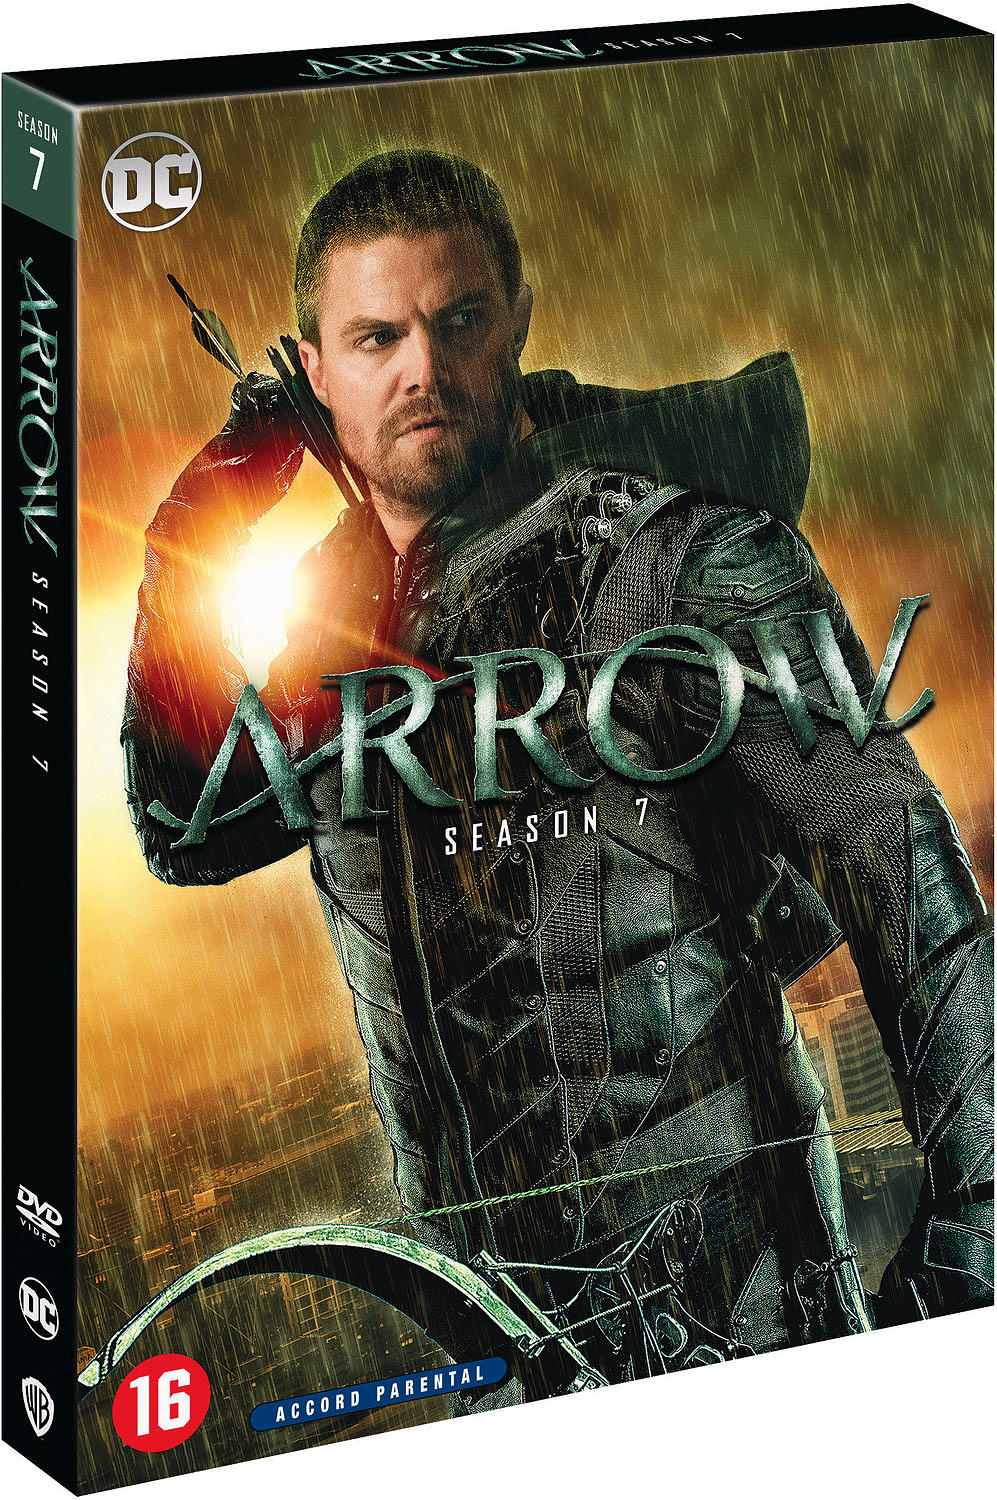 Arrow - Saison 7